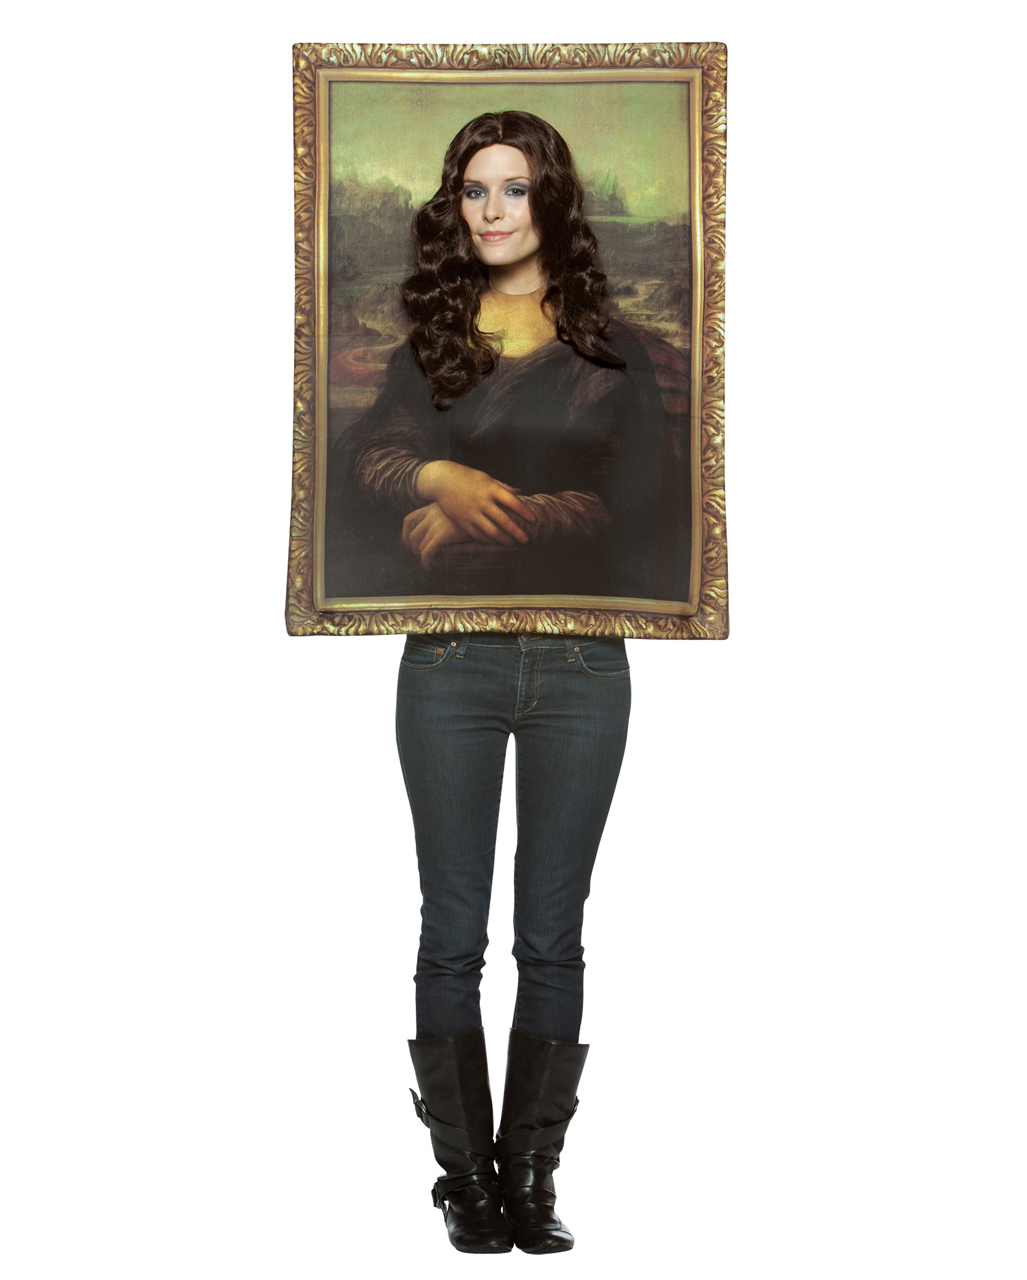 Mona Lisa Portrait Kostüm jetzt online kaufen von Horror-Shop.com